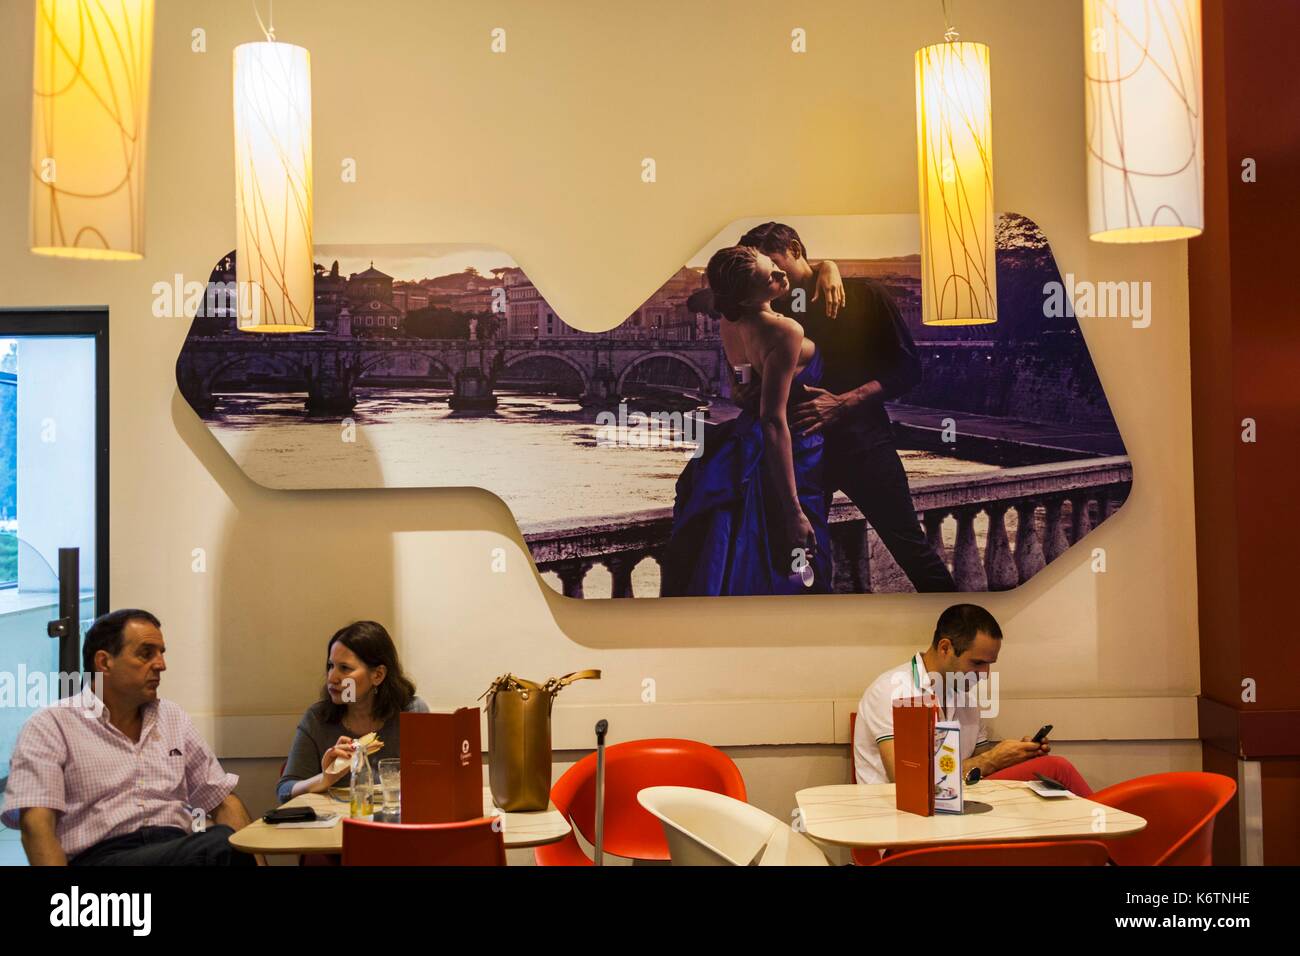 Roumanie, Bucharest, Bucarest aéroport, café avec fresque séduction Banque D'Images